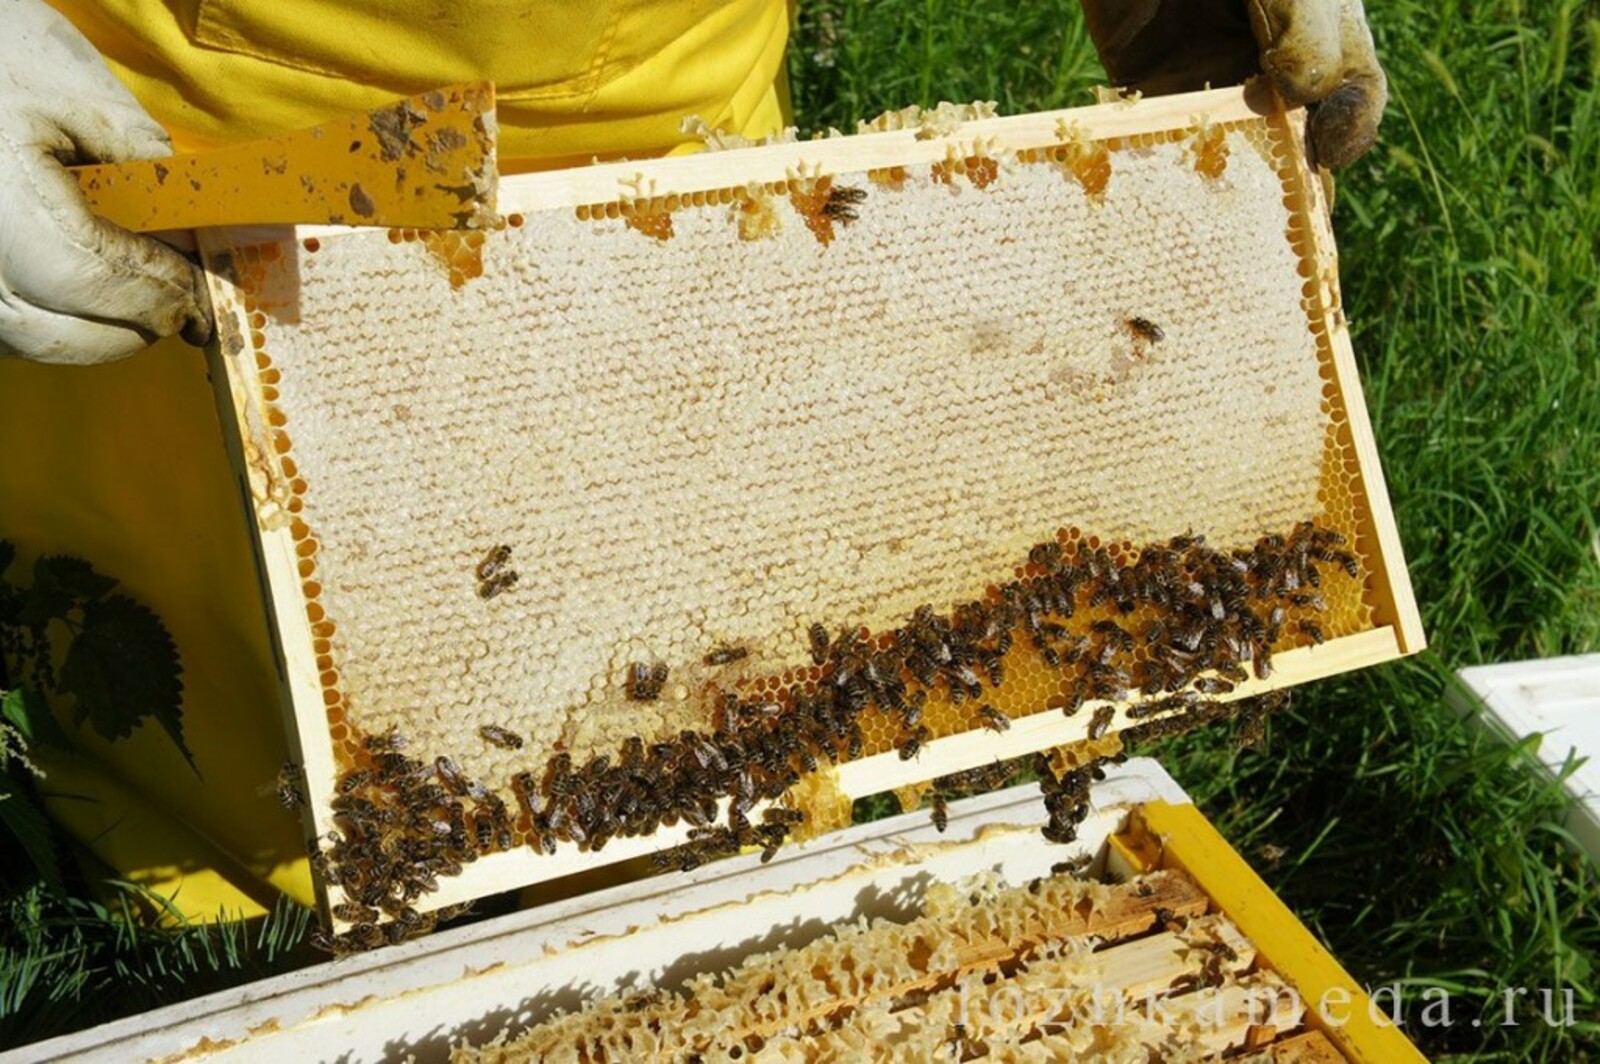 Купить пчел на озоне. Улей на пасеке. Пчела на сотах. Пчелы в улье. Рамки с сотами для ульев.